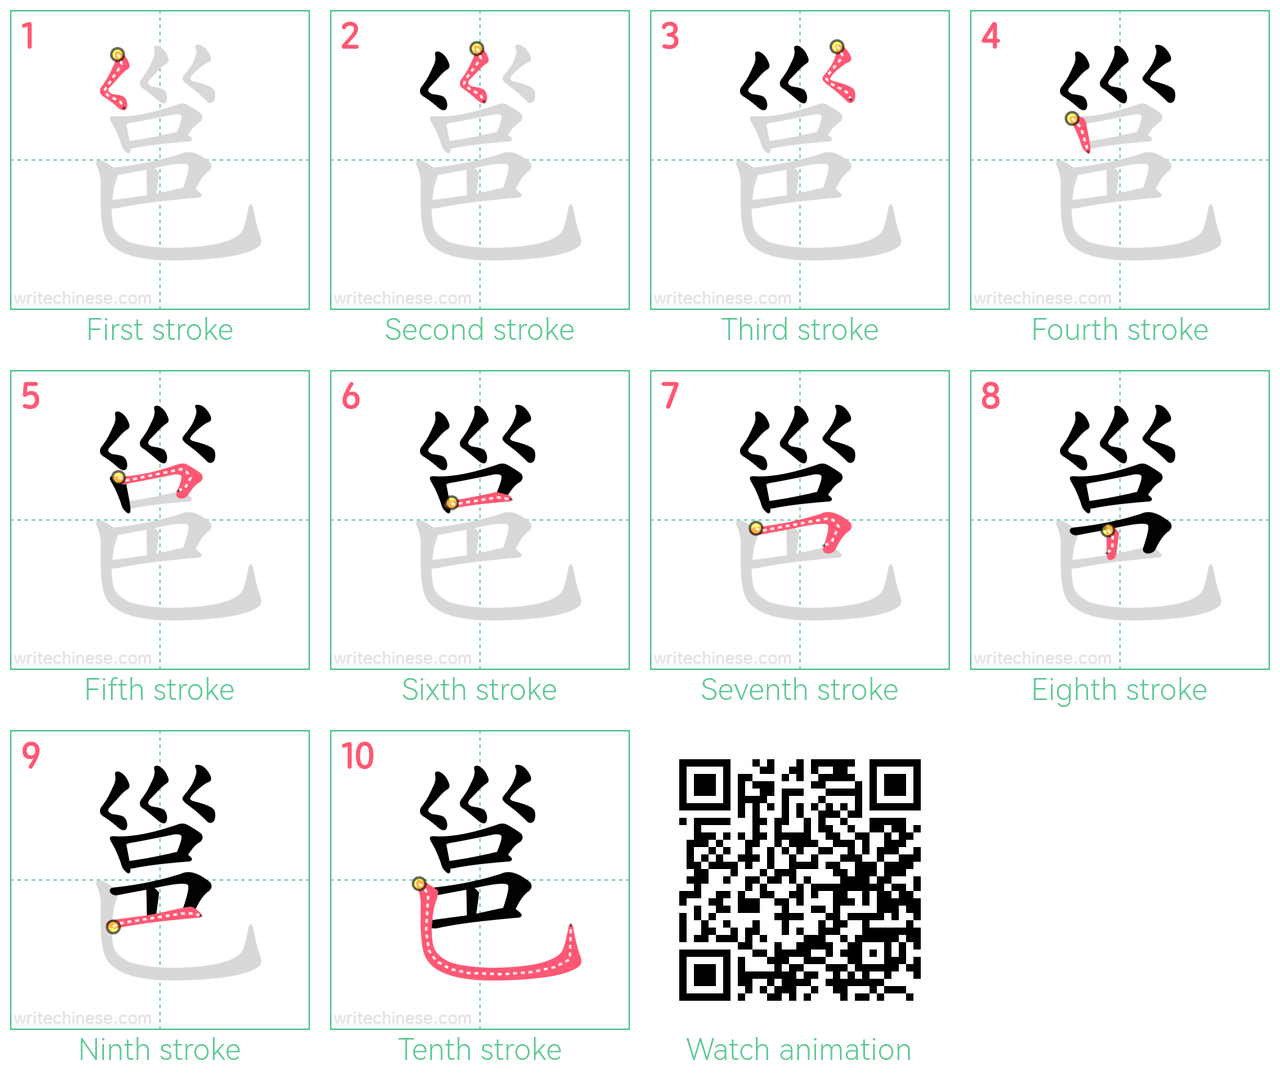 邕 step-by-step stroke order diagrams